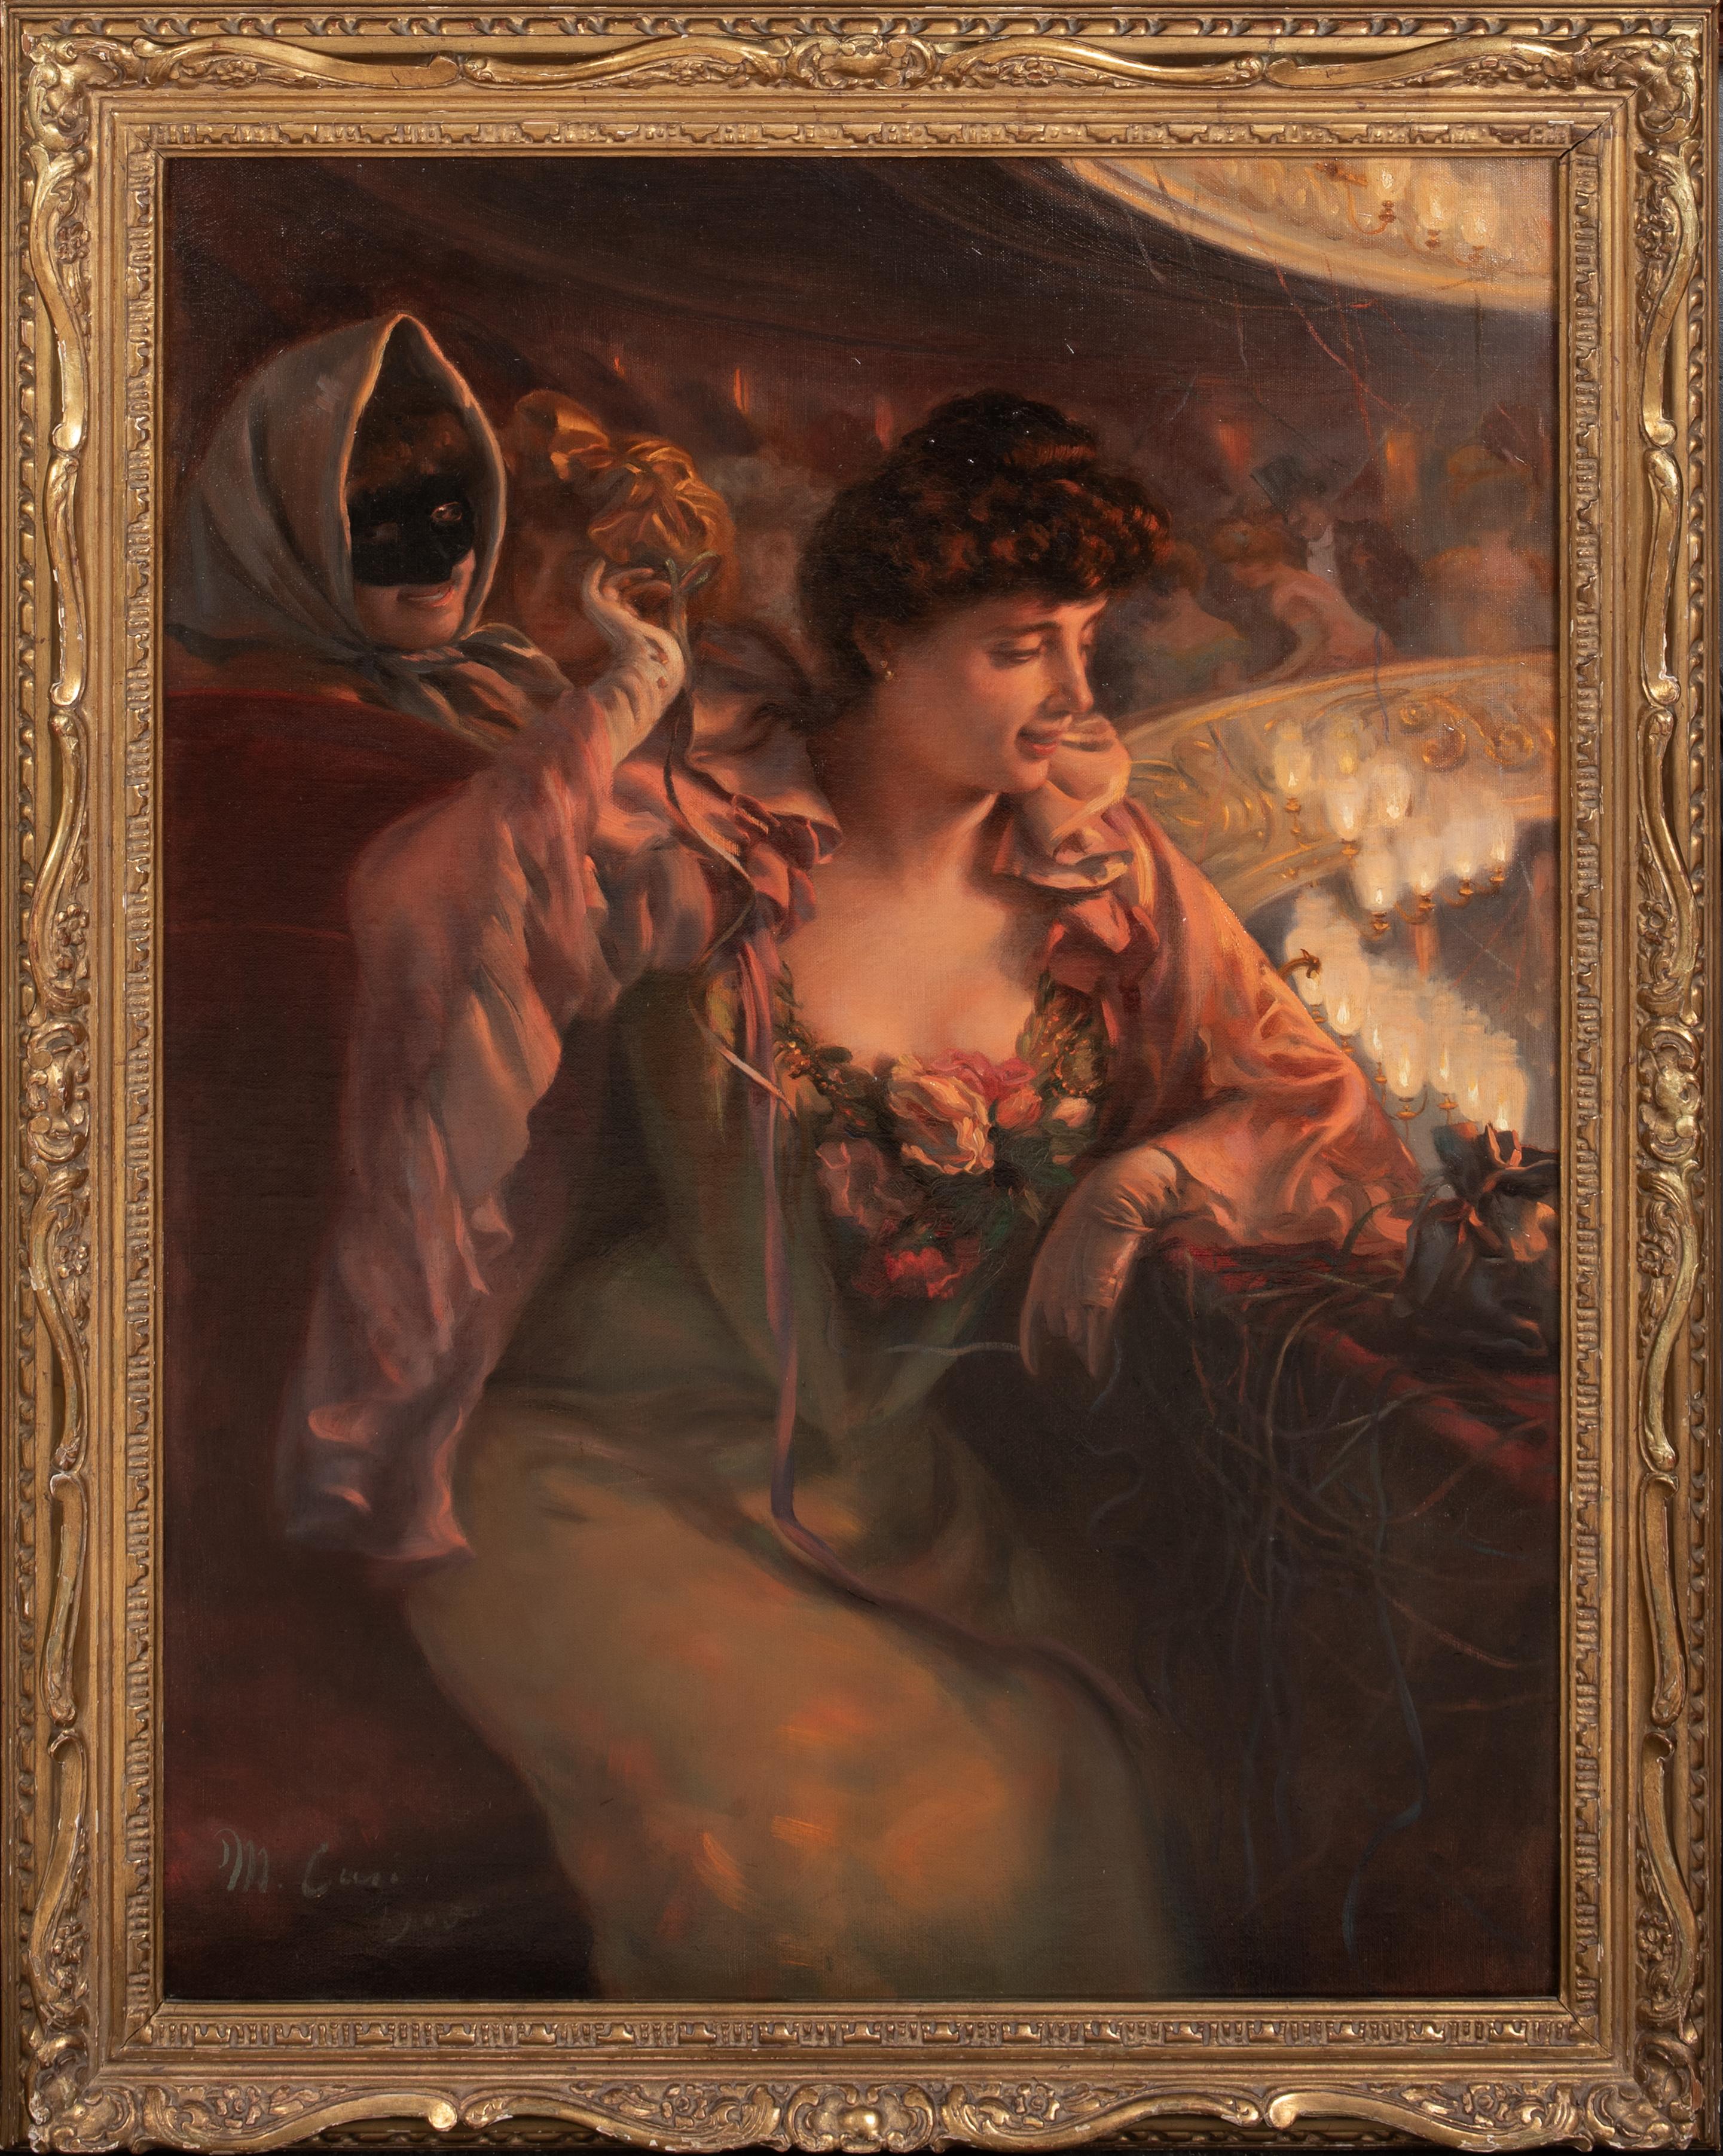 Manuel Cusi y Ferret  Portrait Painting - A Night At The Opera, 19th Century  by Manuel CUSI Y FERRET (1857-1922) 